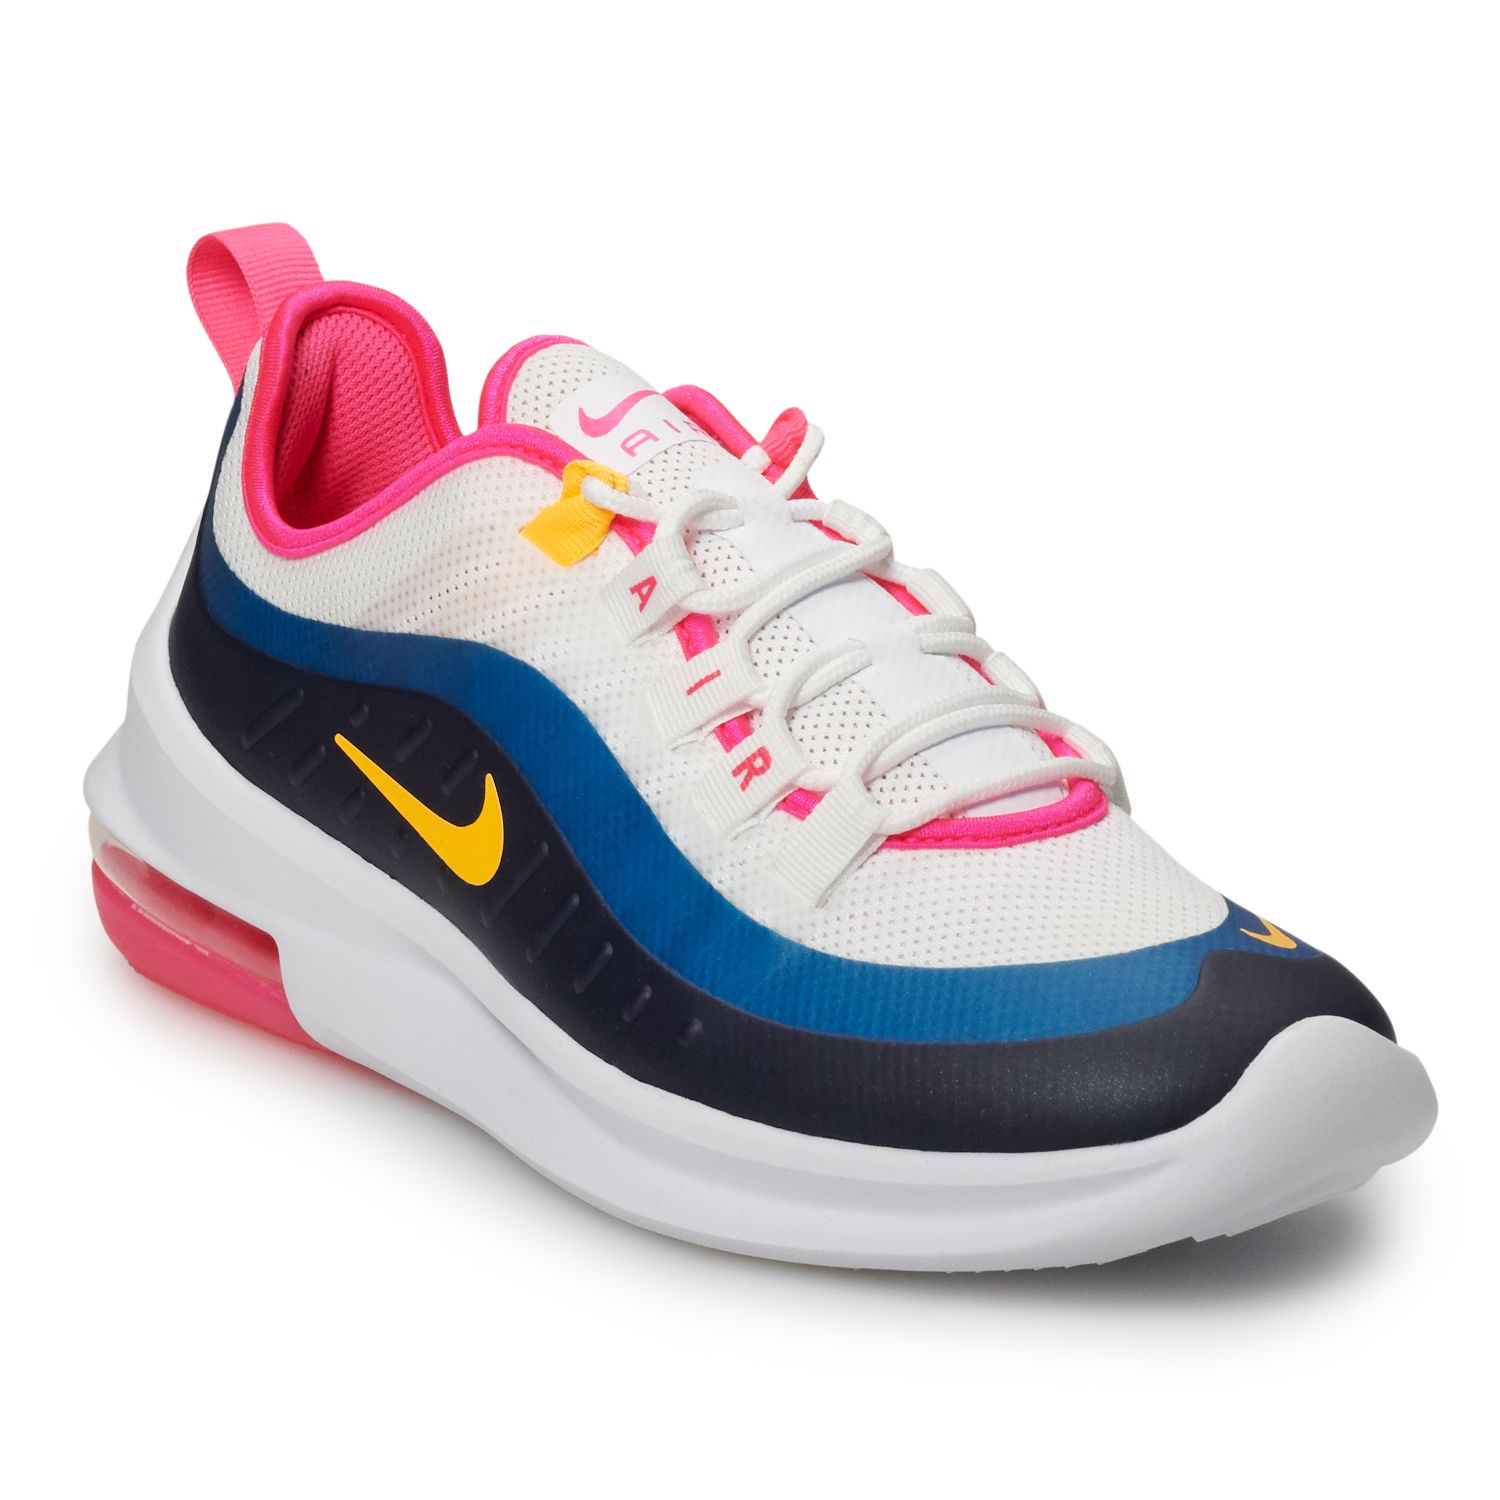 air max tennis shoes womens